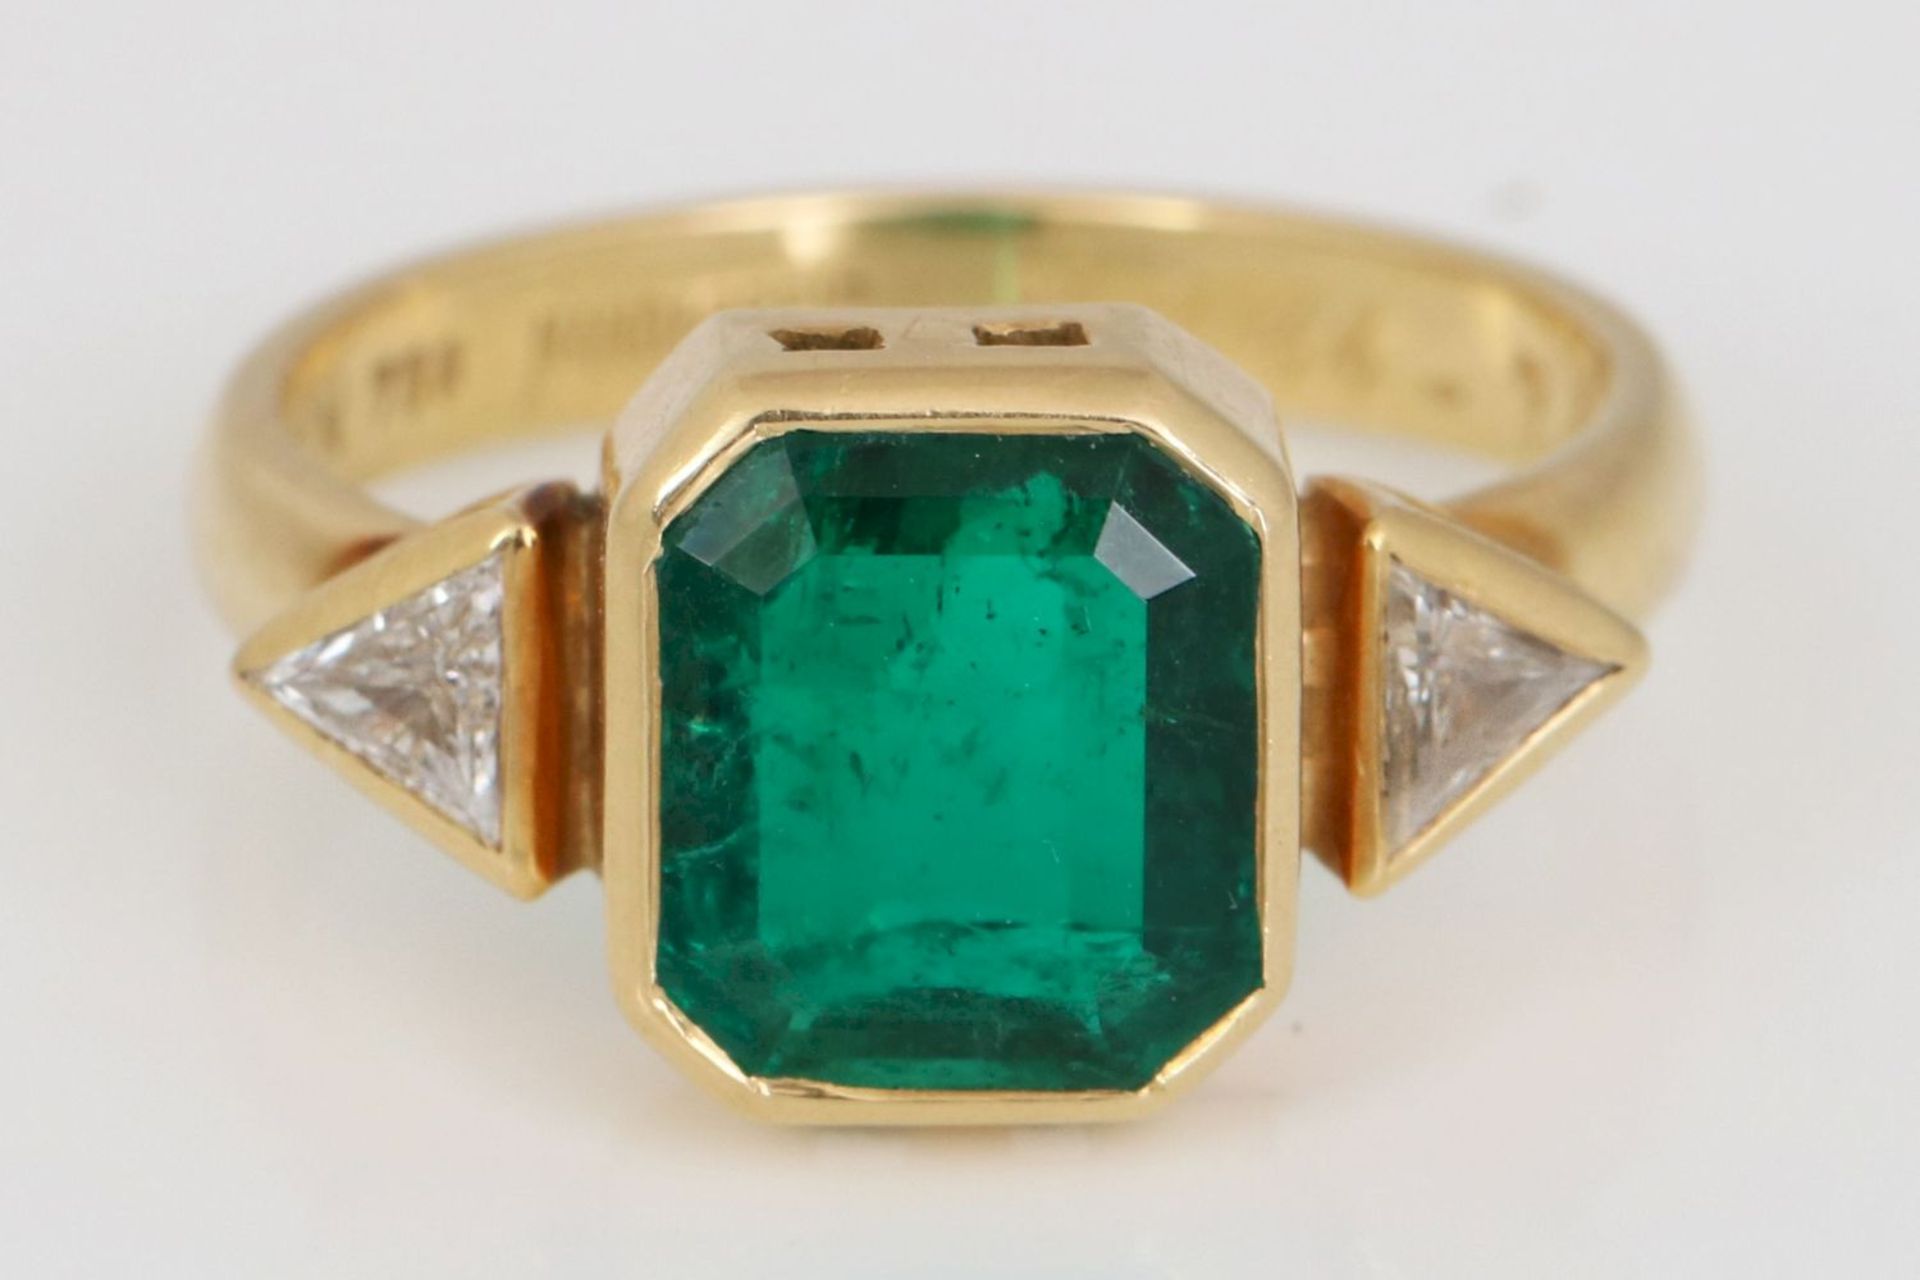 Smaragd-Ring 750er Gelbgold, mittig ein Smaragd im rechteckigen Treppenschliff, ca. 2,00ct., - Image 2 of 2